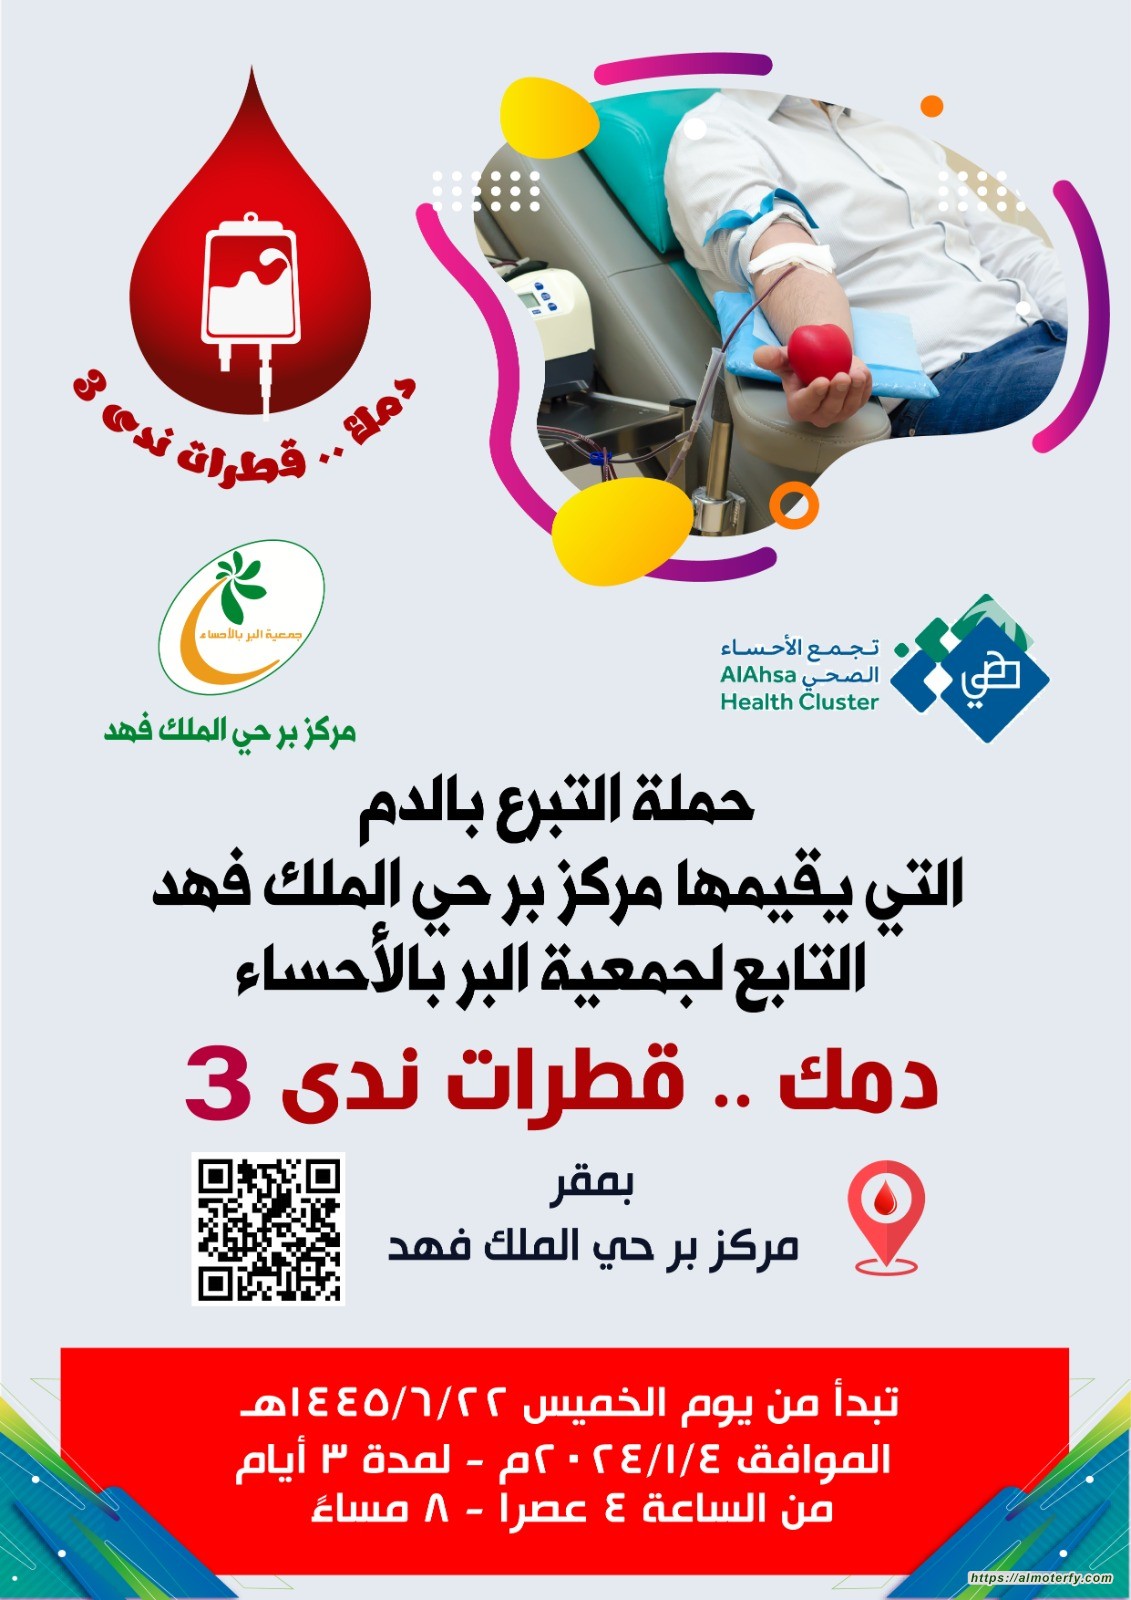 مركز بر حي الملك فهد يطلق حملته الثالثة للتبرع بالدم تحت شعار "دمك قطرات ندى"